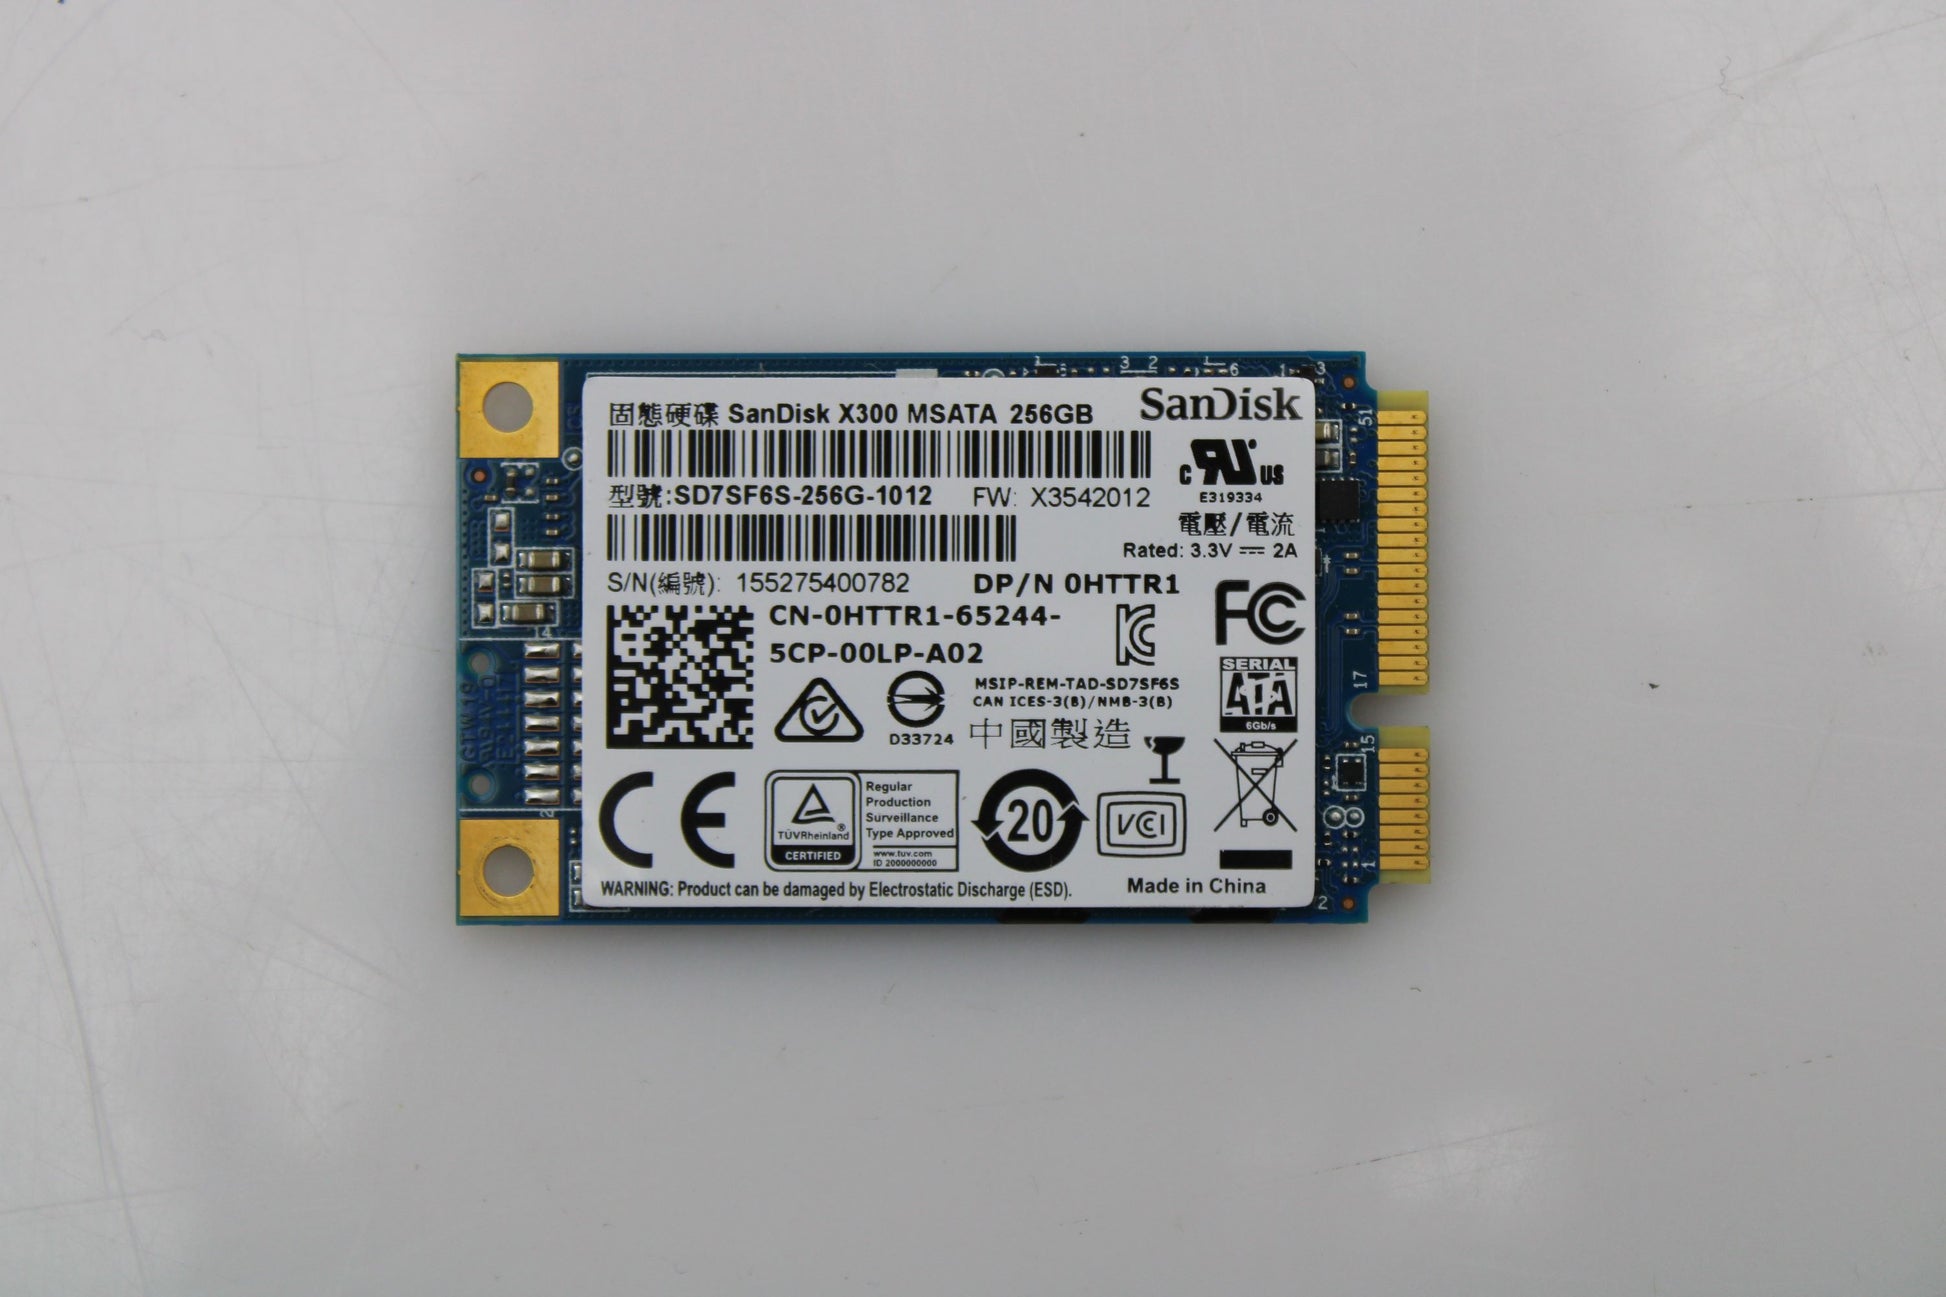 Dell SD7SF6S-256G-1012 256GB SSD M.2 MSATA 6G, Used